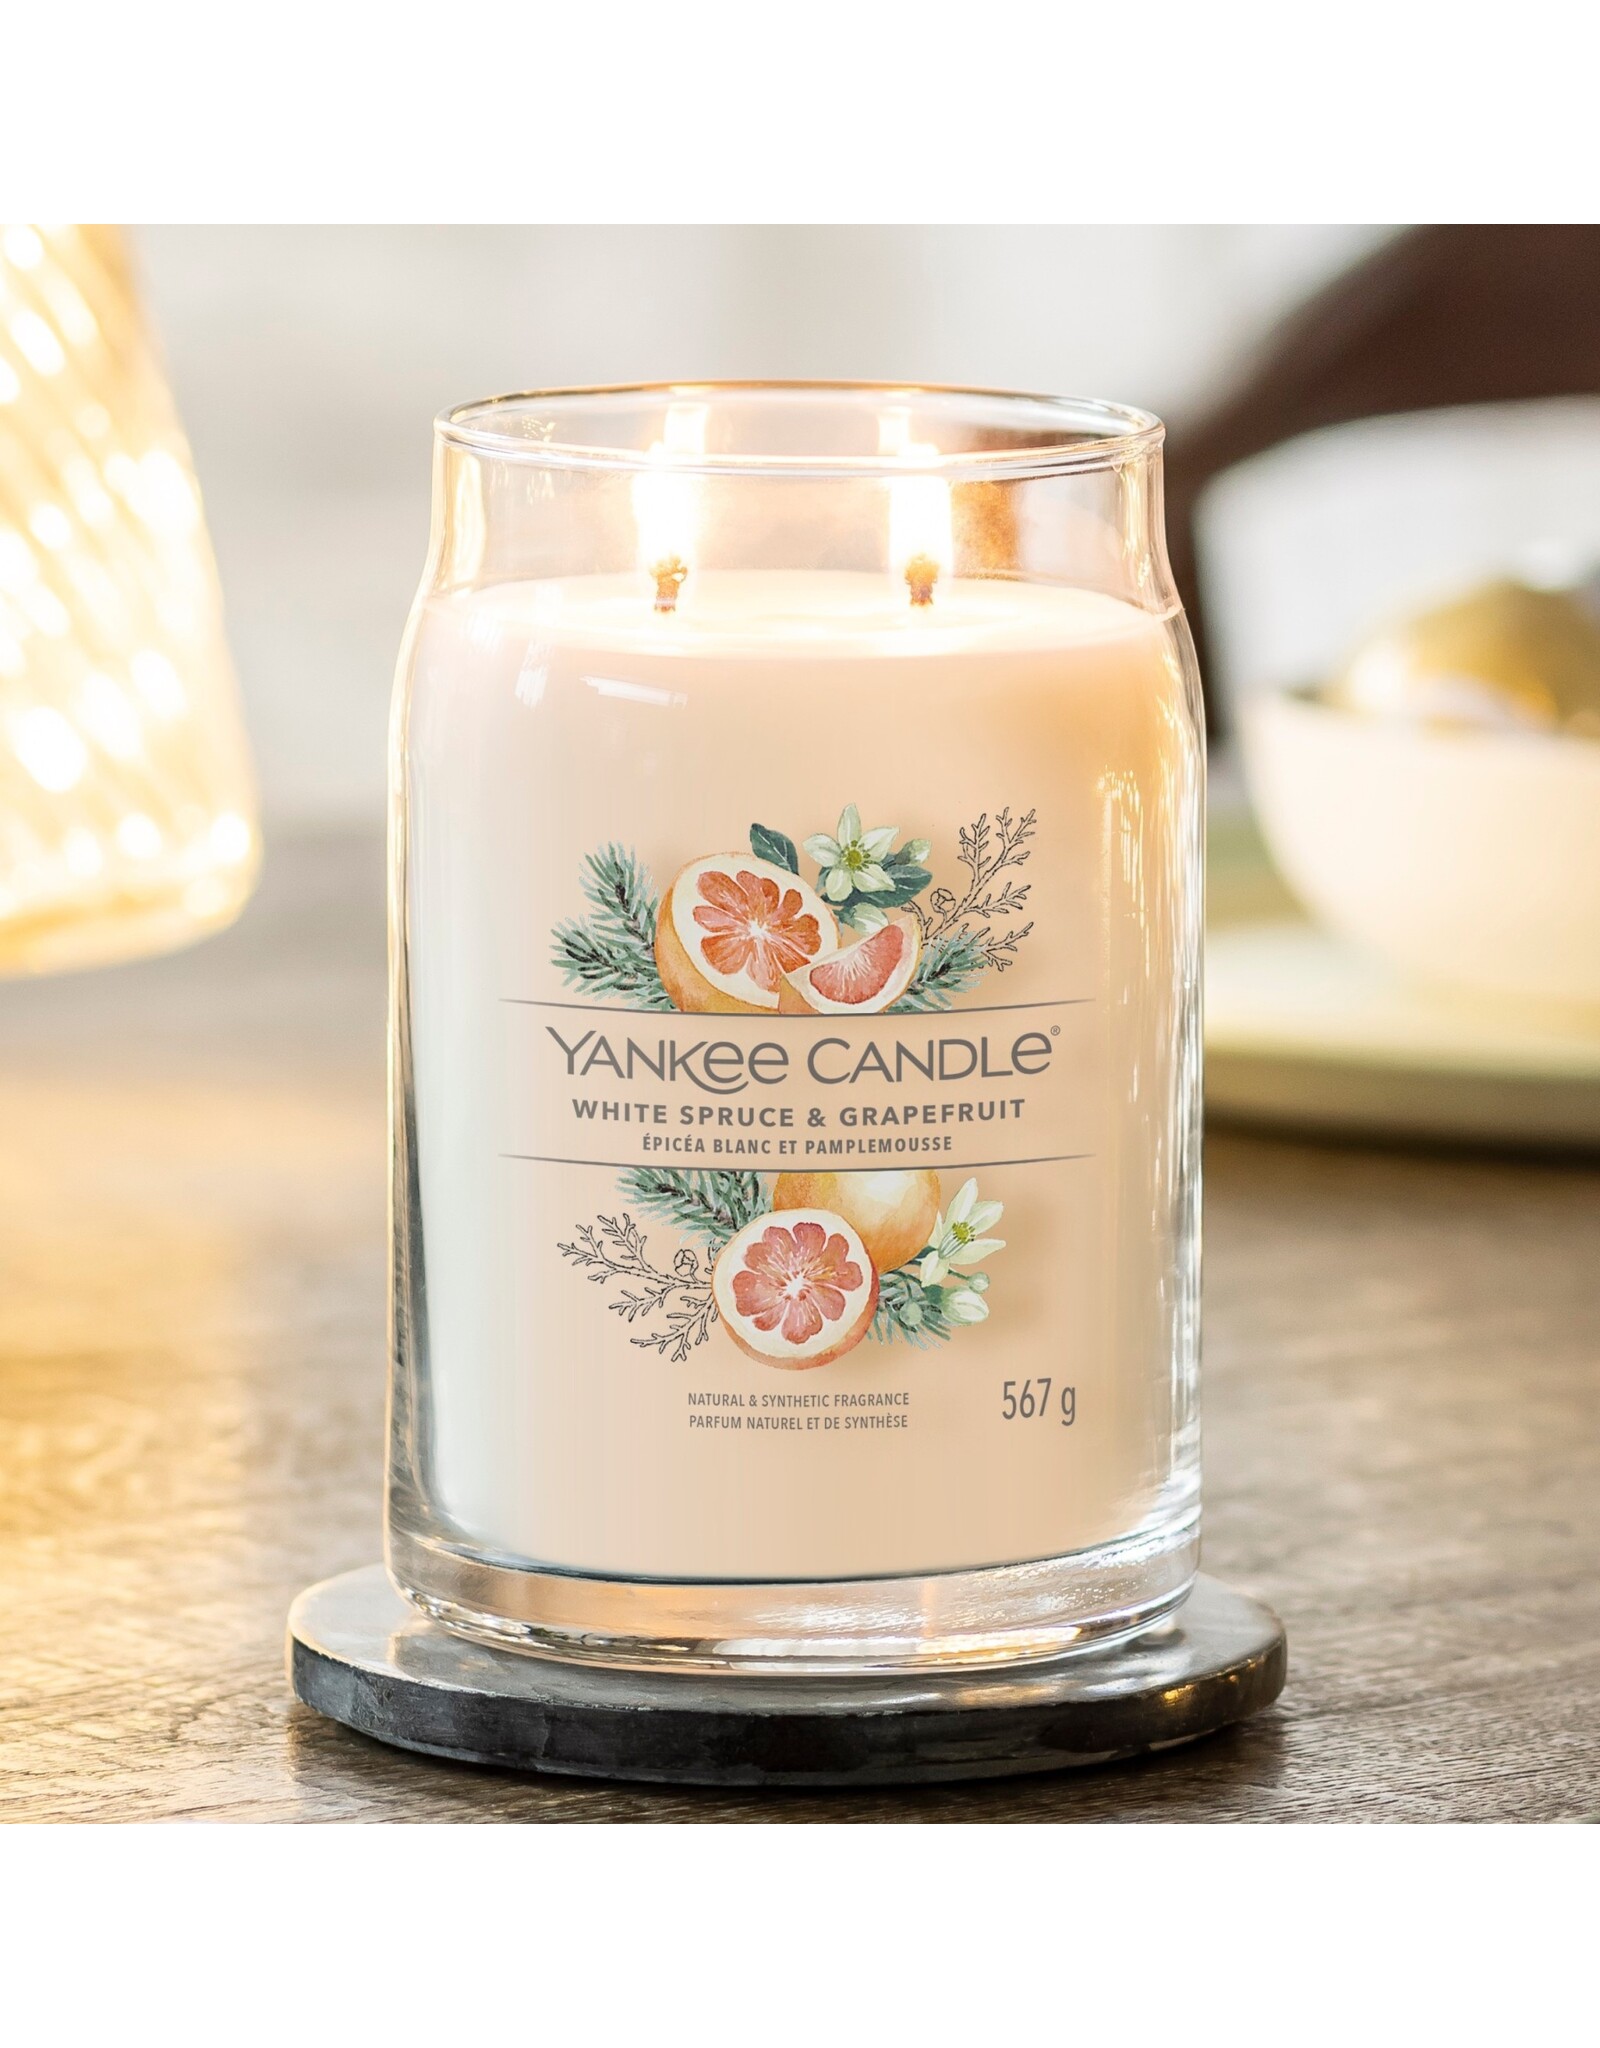 Yankee Candle White Spruce & Grapefruit - Signature Large Jar